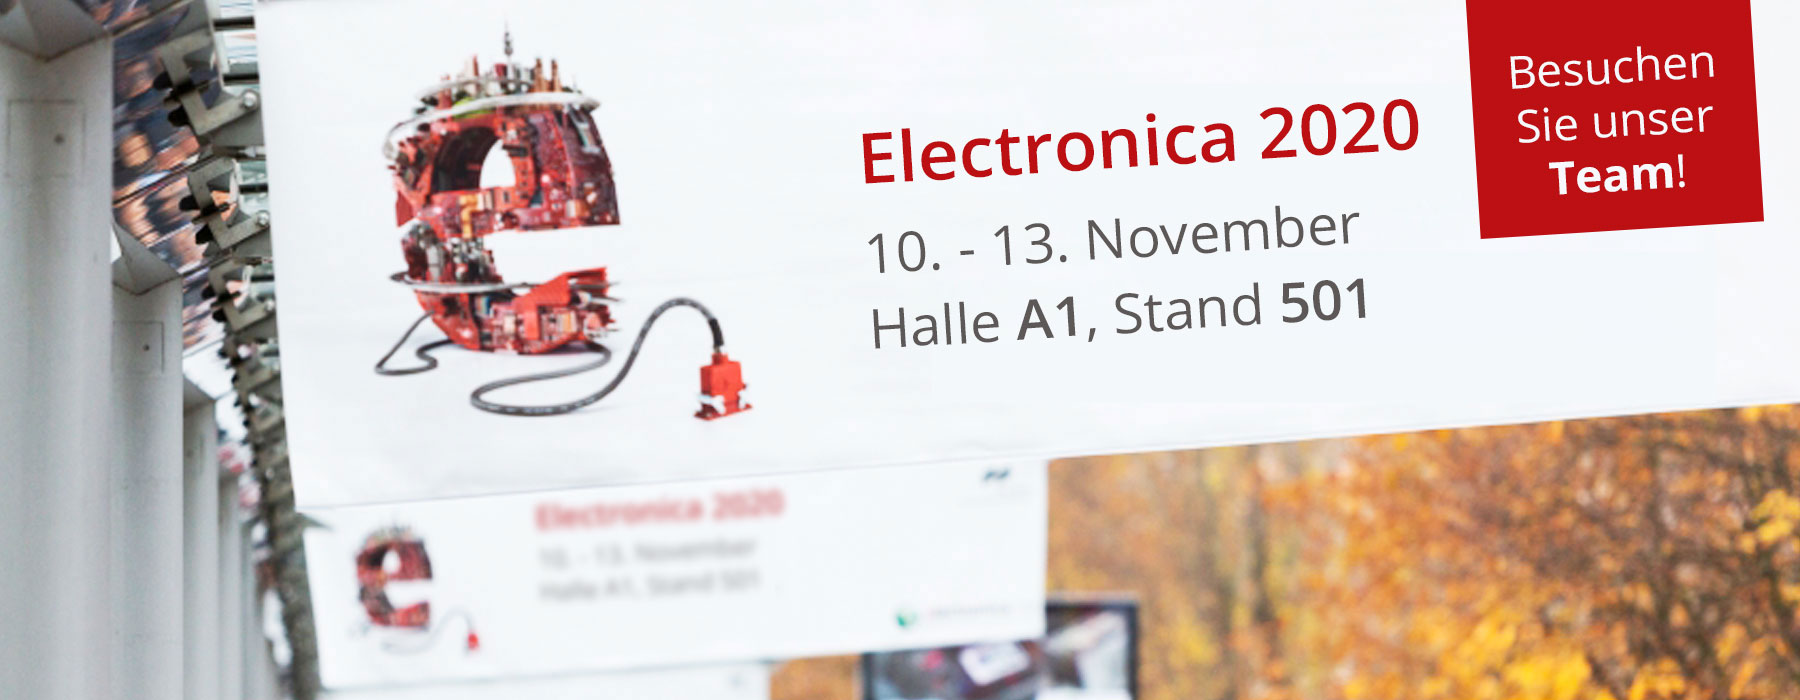 Bavaria Digital Technik auf der Messe electronica 2020